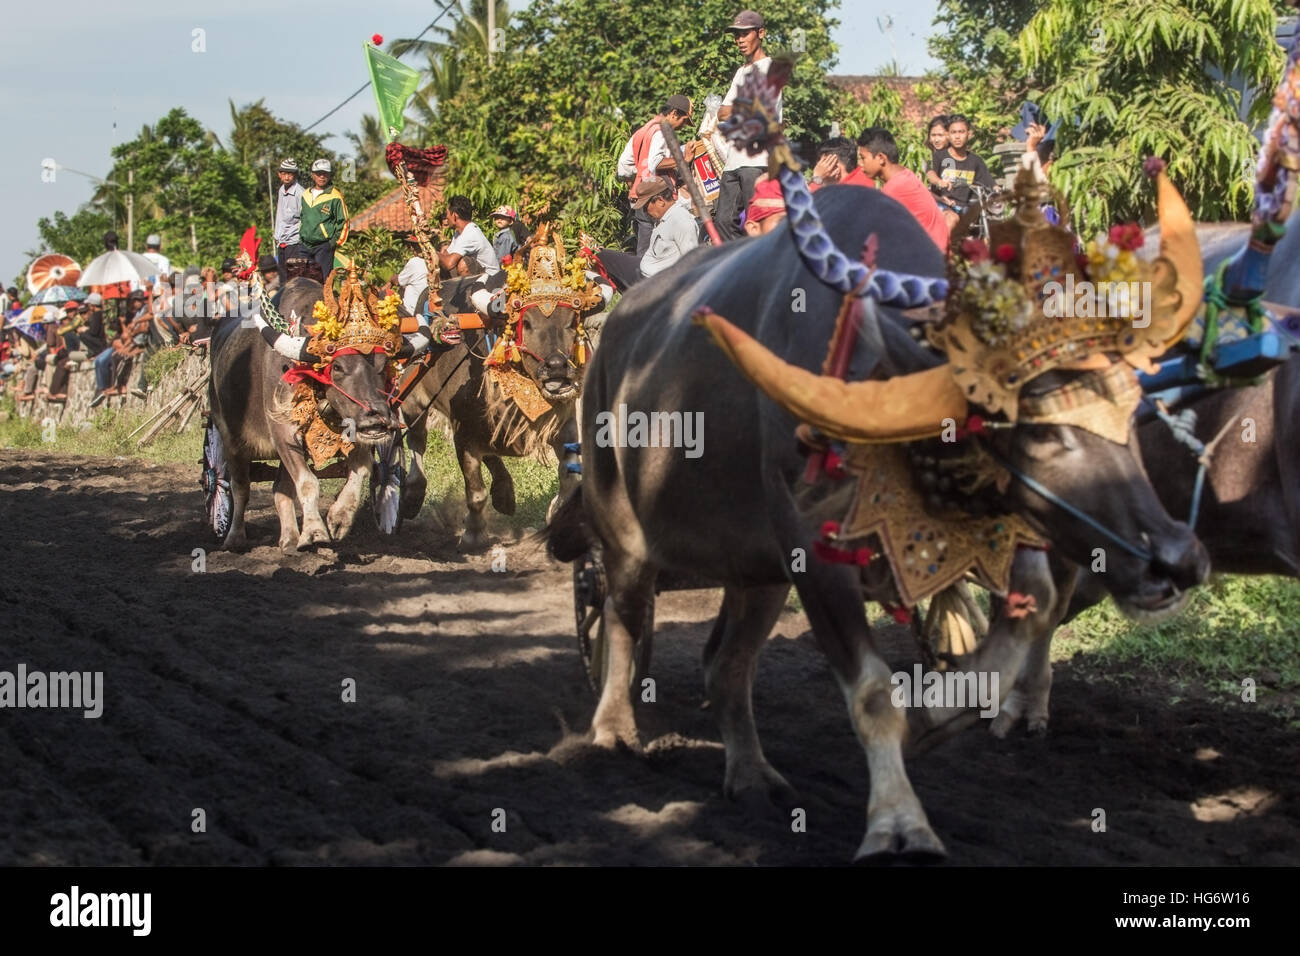 Decorated buffalo racing at Makepung in Bali Stock Photo